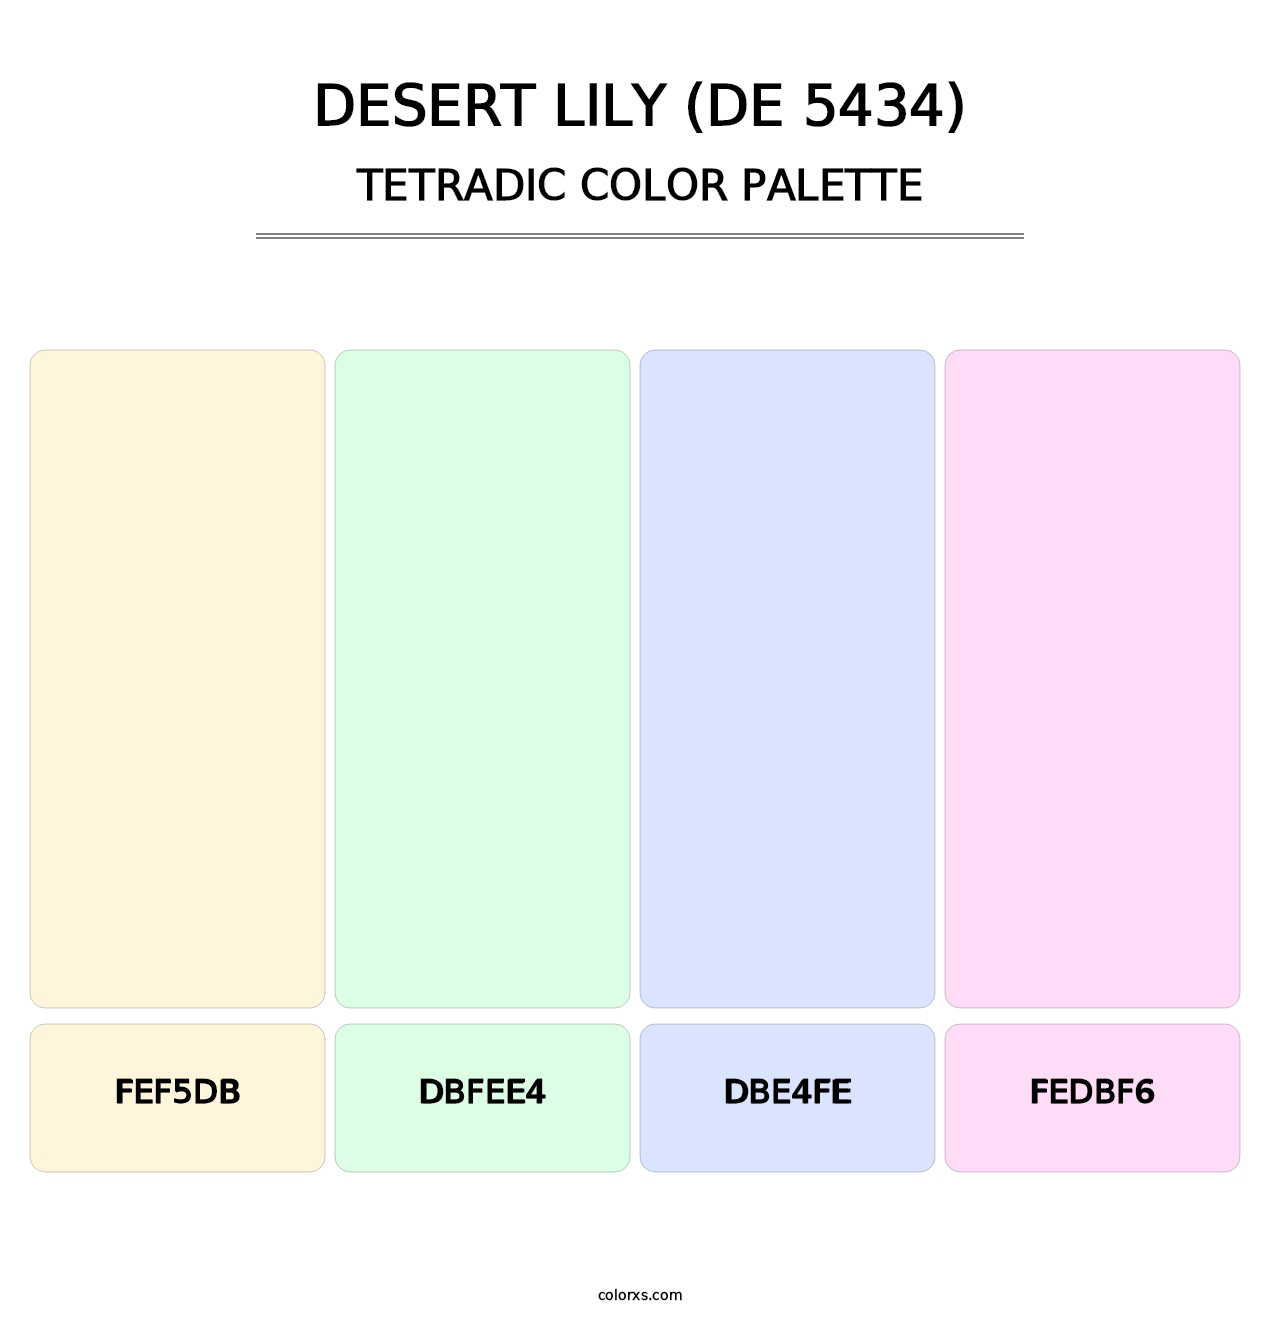 Desert Lily (DE 5434) - Tetradic Color Palette